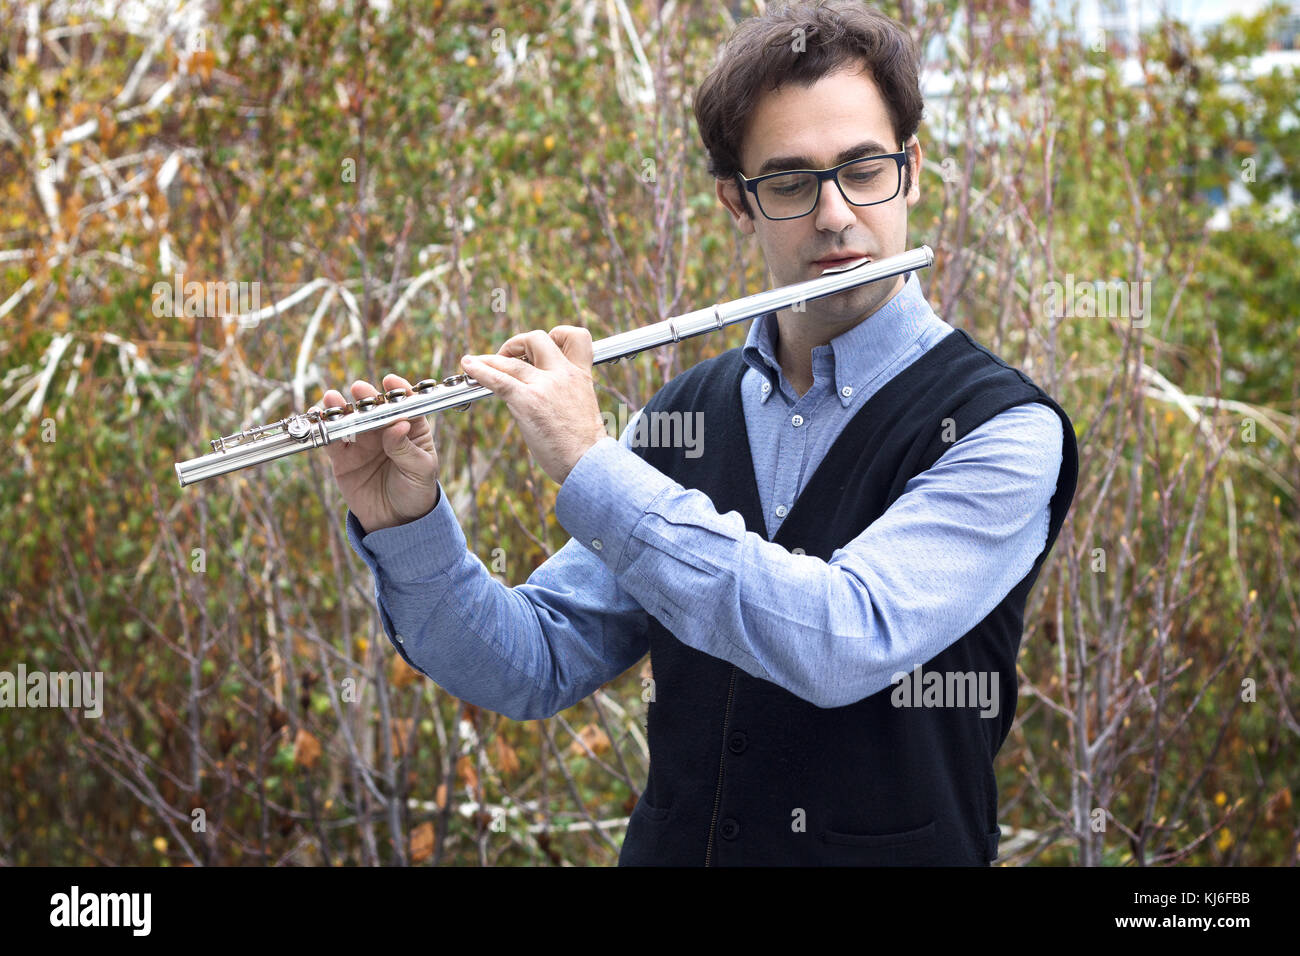 Un maschio flautista giocando a Silver flauto traverso all'aperto, indossare occhiali. Foto Stock